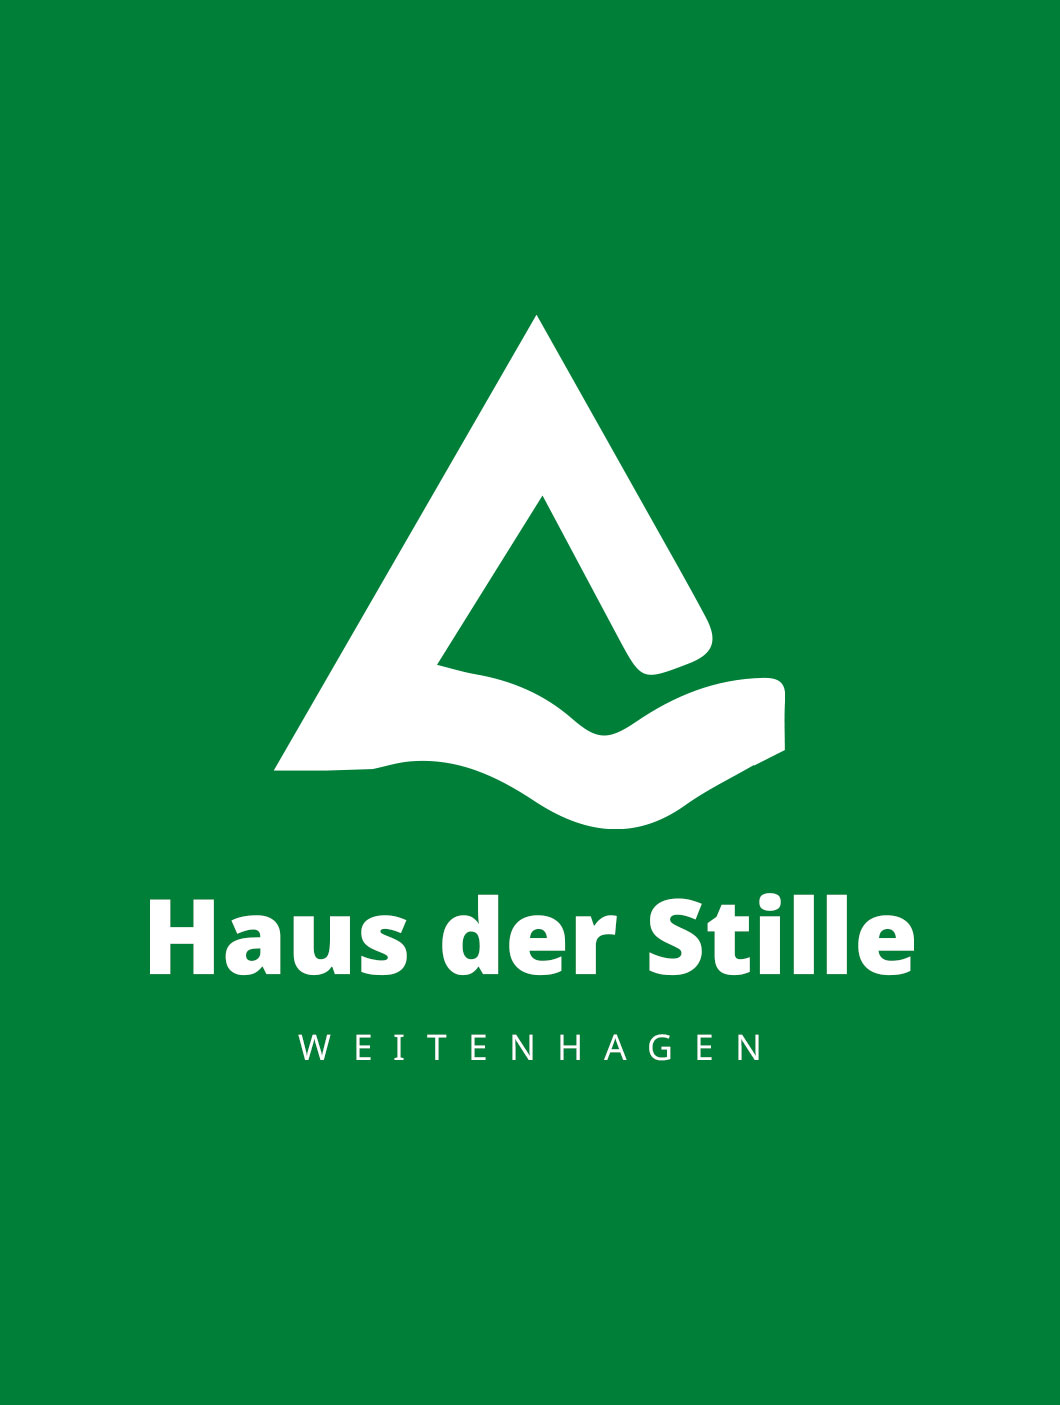 OJC-Greifswald: Banner für Kooperation mit dem Haus der Stille in Weitenhagen